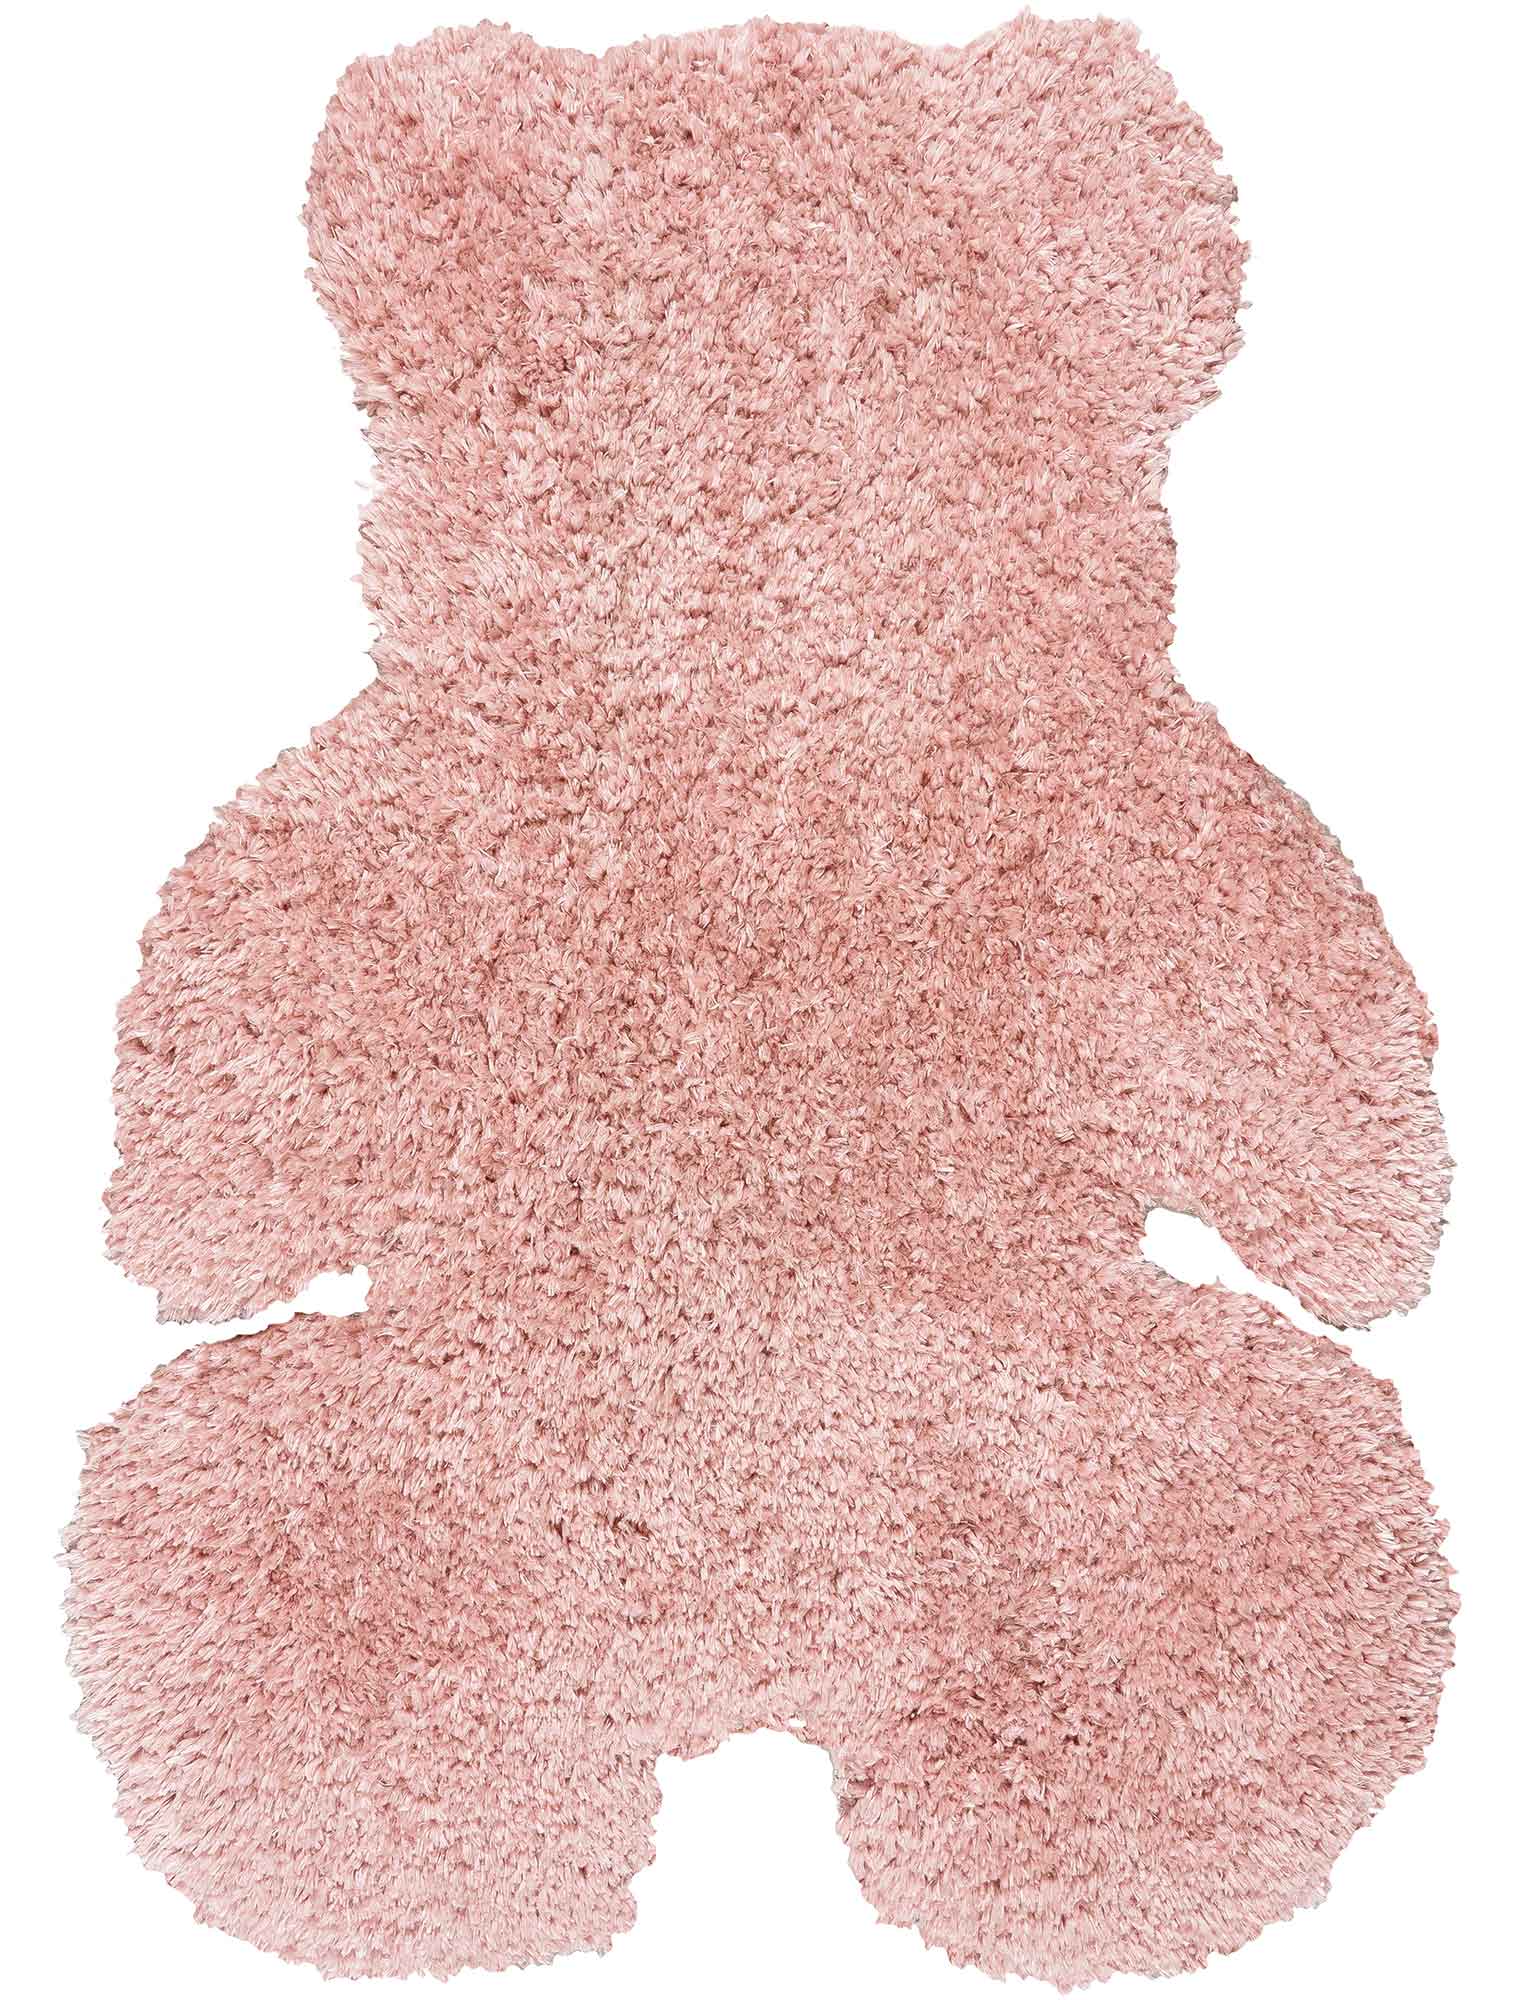 Παιδικό Χαλί PINK SHADE TEDDY BEAR από την εταιρεία Madi